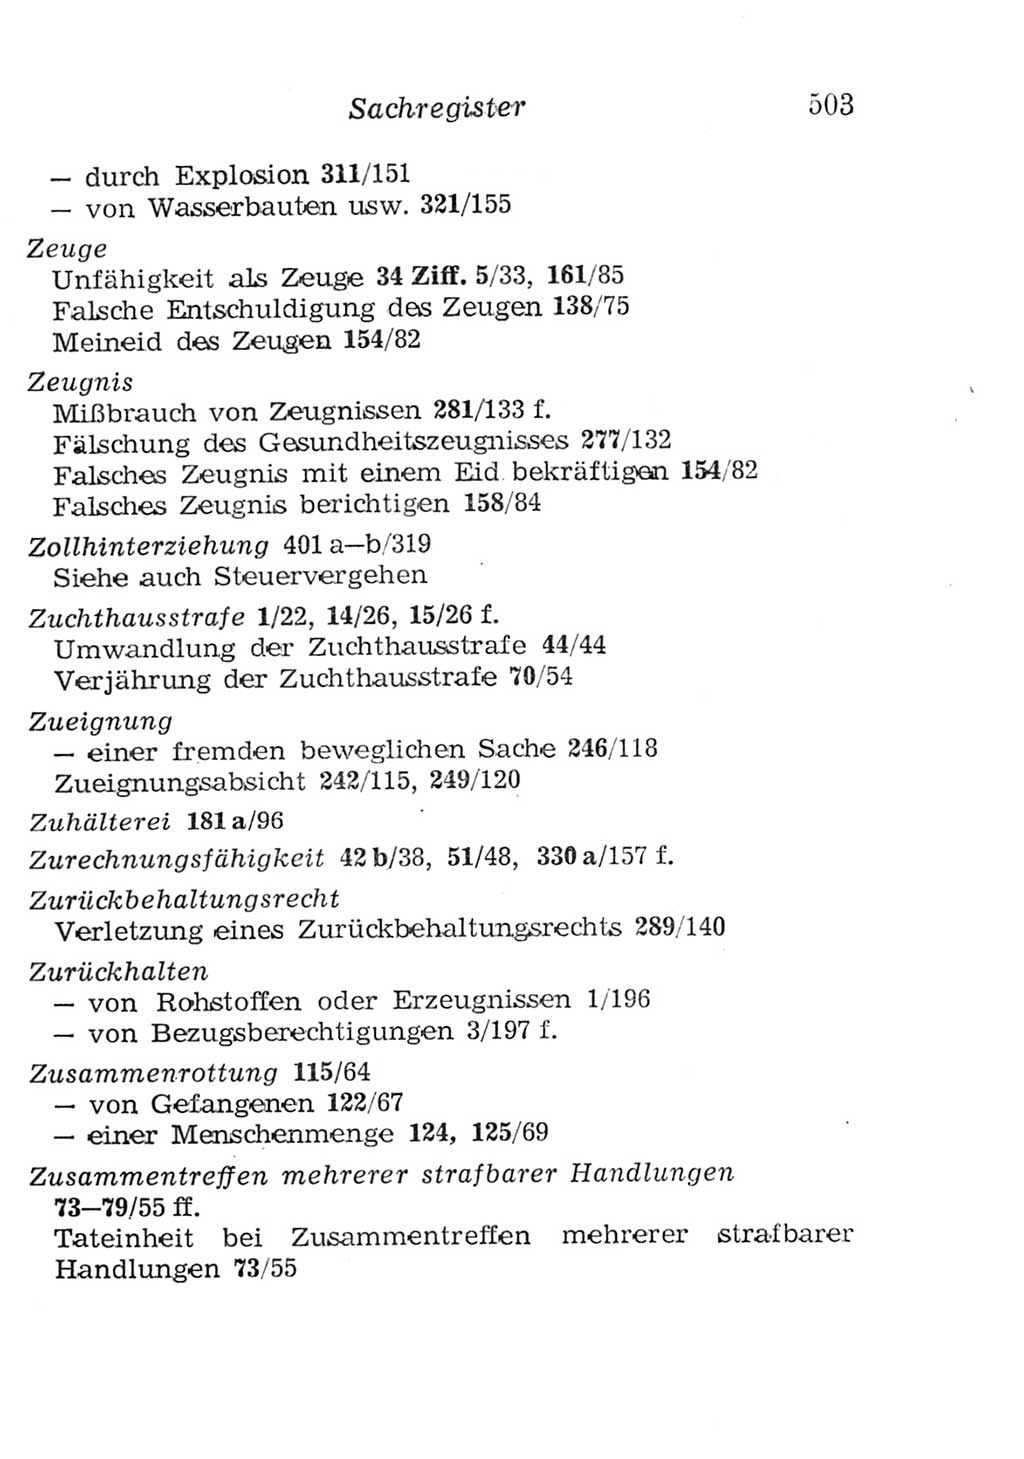 Strafgesetzbuch (StGB) und andere Strafgesetze [Deutsche Demokratische Republik (DDR)] 1957, Seite 503 (StGB Strafges. DDR 1957, S. 503)